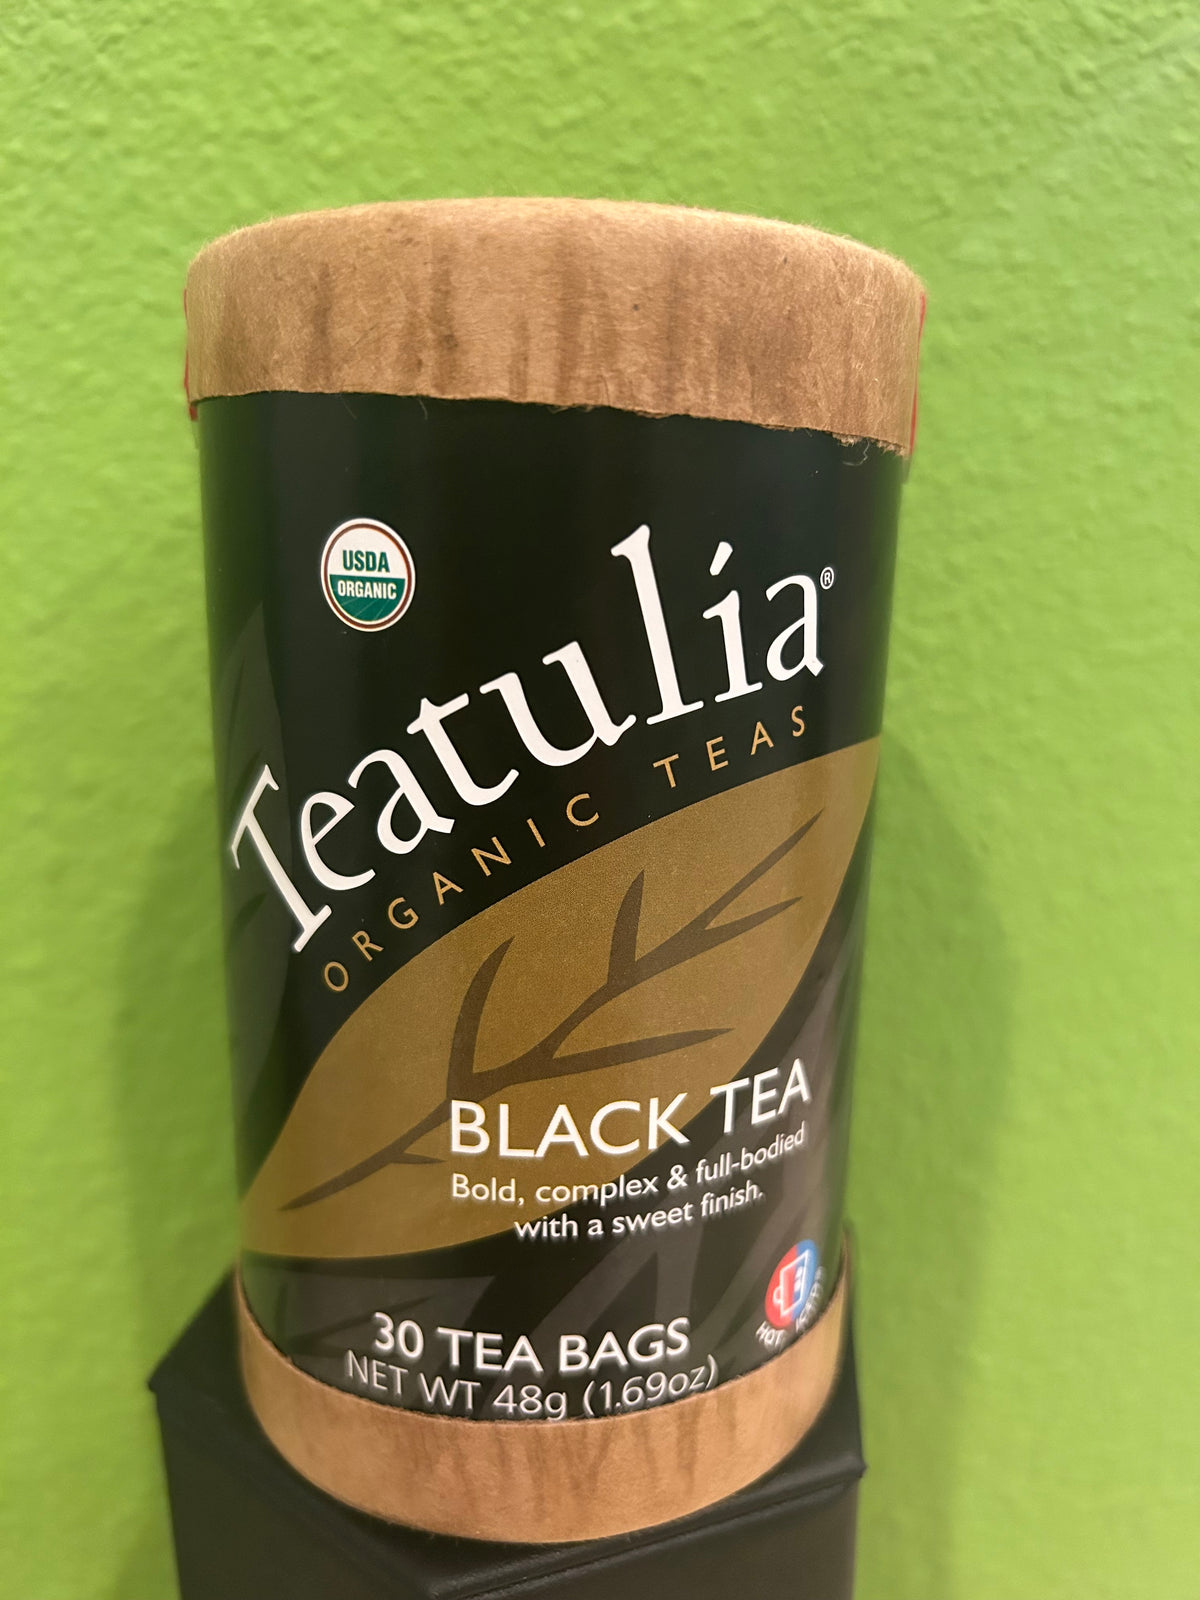 Teatulia Organic Teas-Black Tea